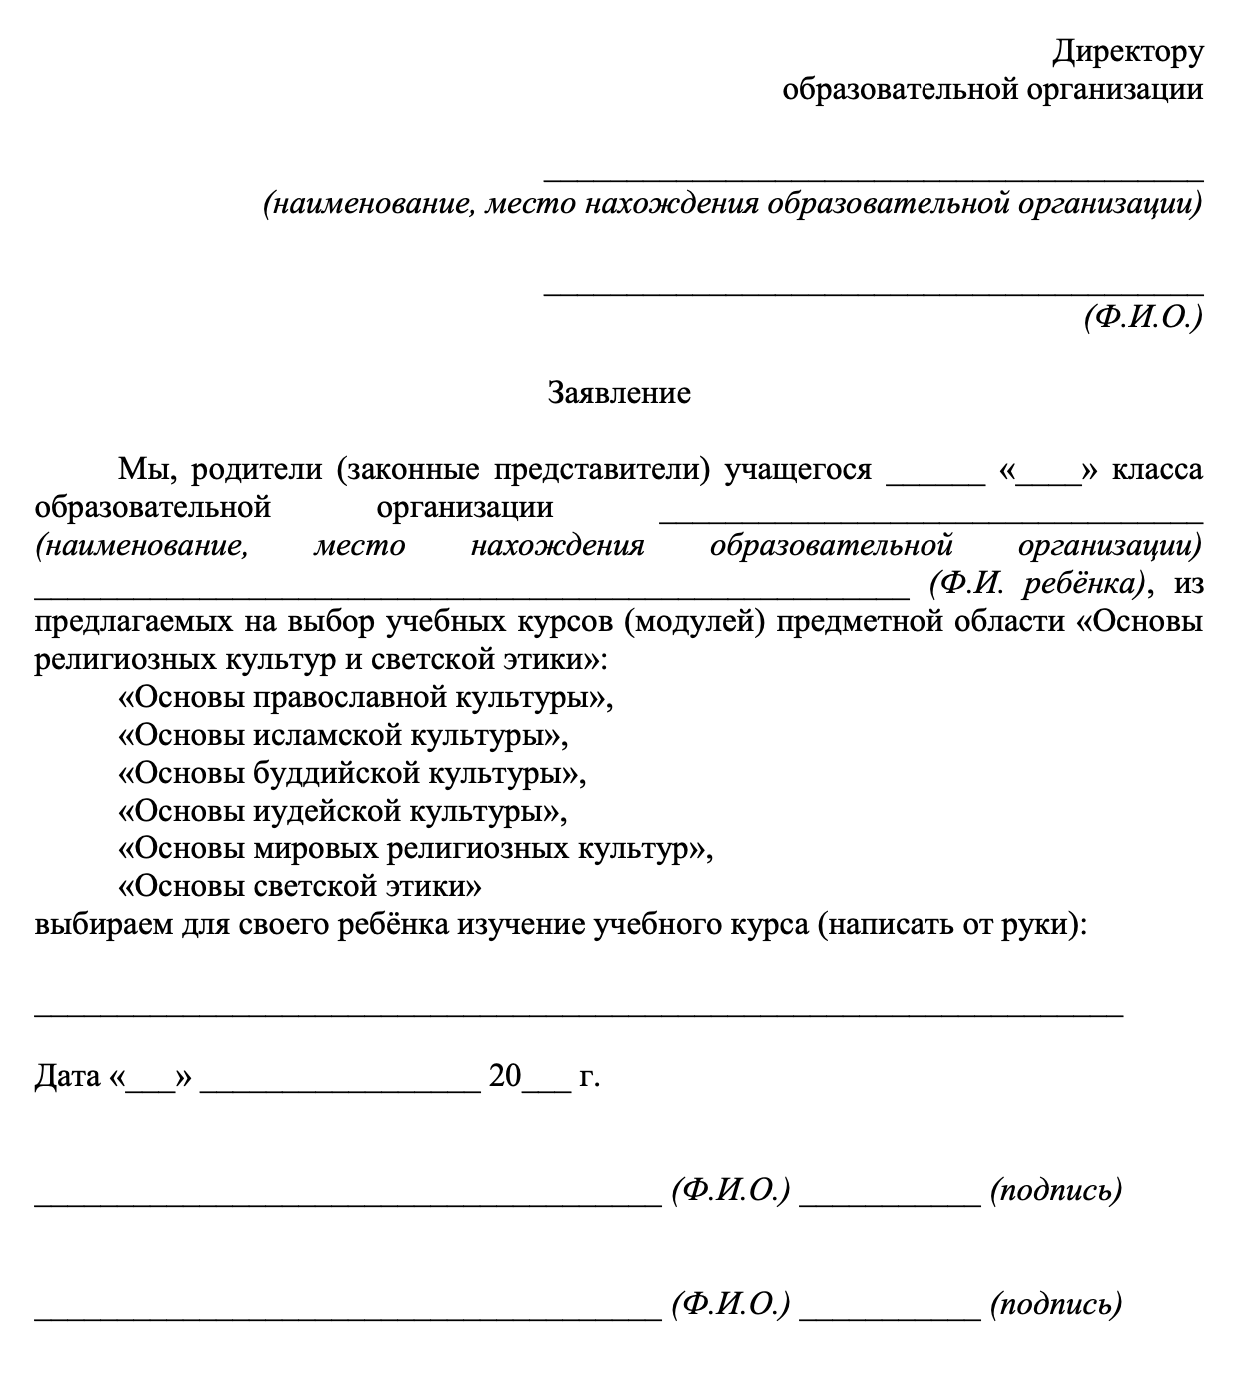 Пример заявления на выбор модуля ОРКСЭ. Источник: mskobr.ru